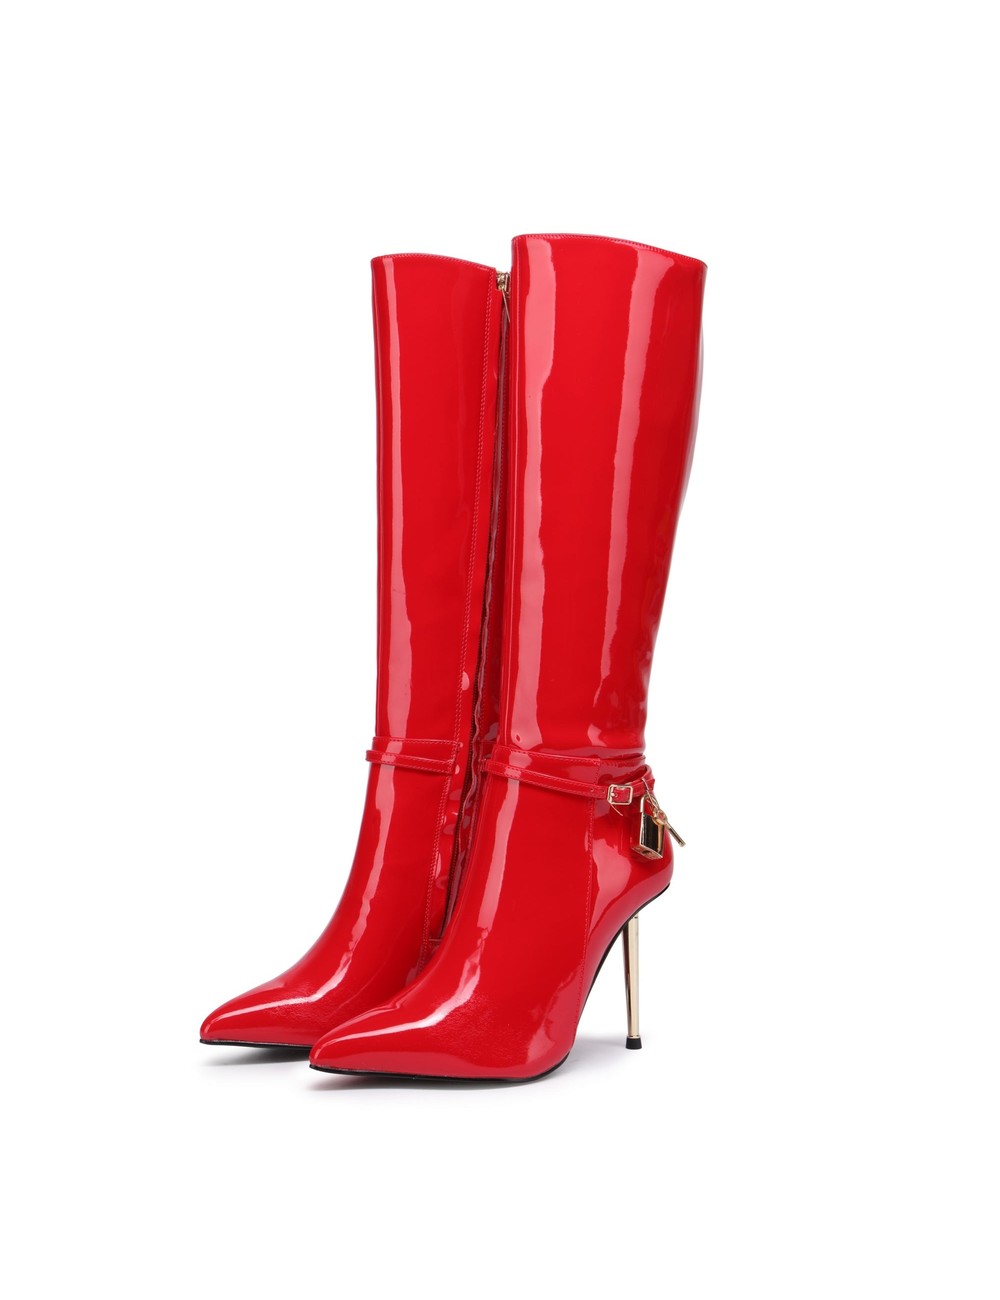 Giaro LEANDRA RED SHINY KNEE BOOTS - Shoebidoo Shoes | Giaro high heels